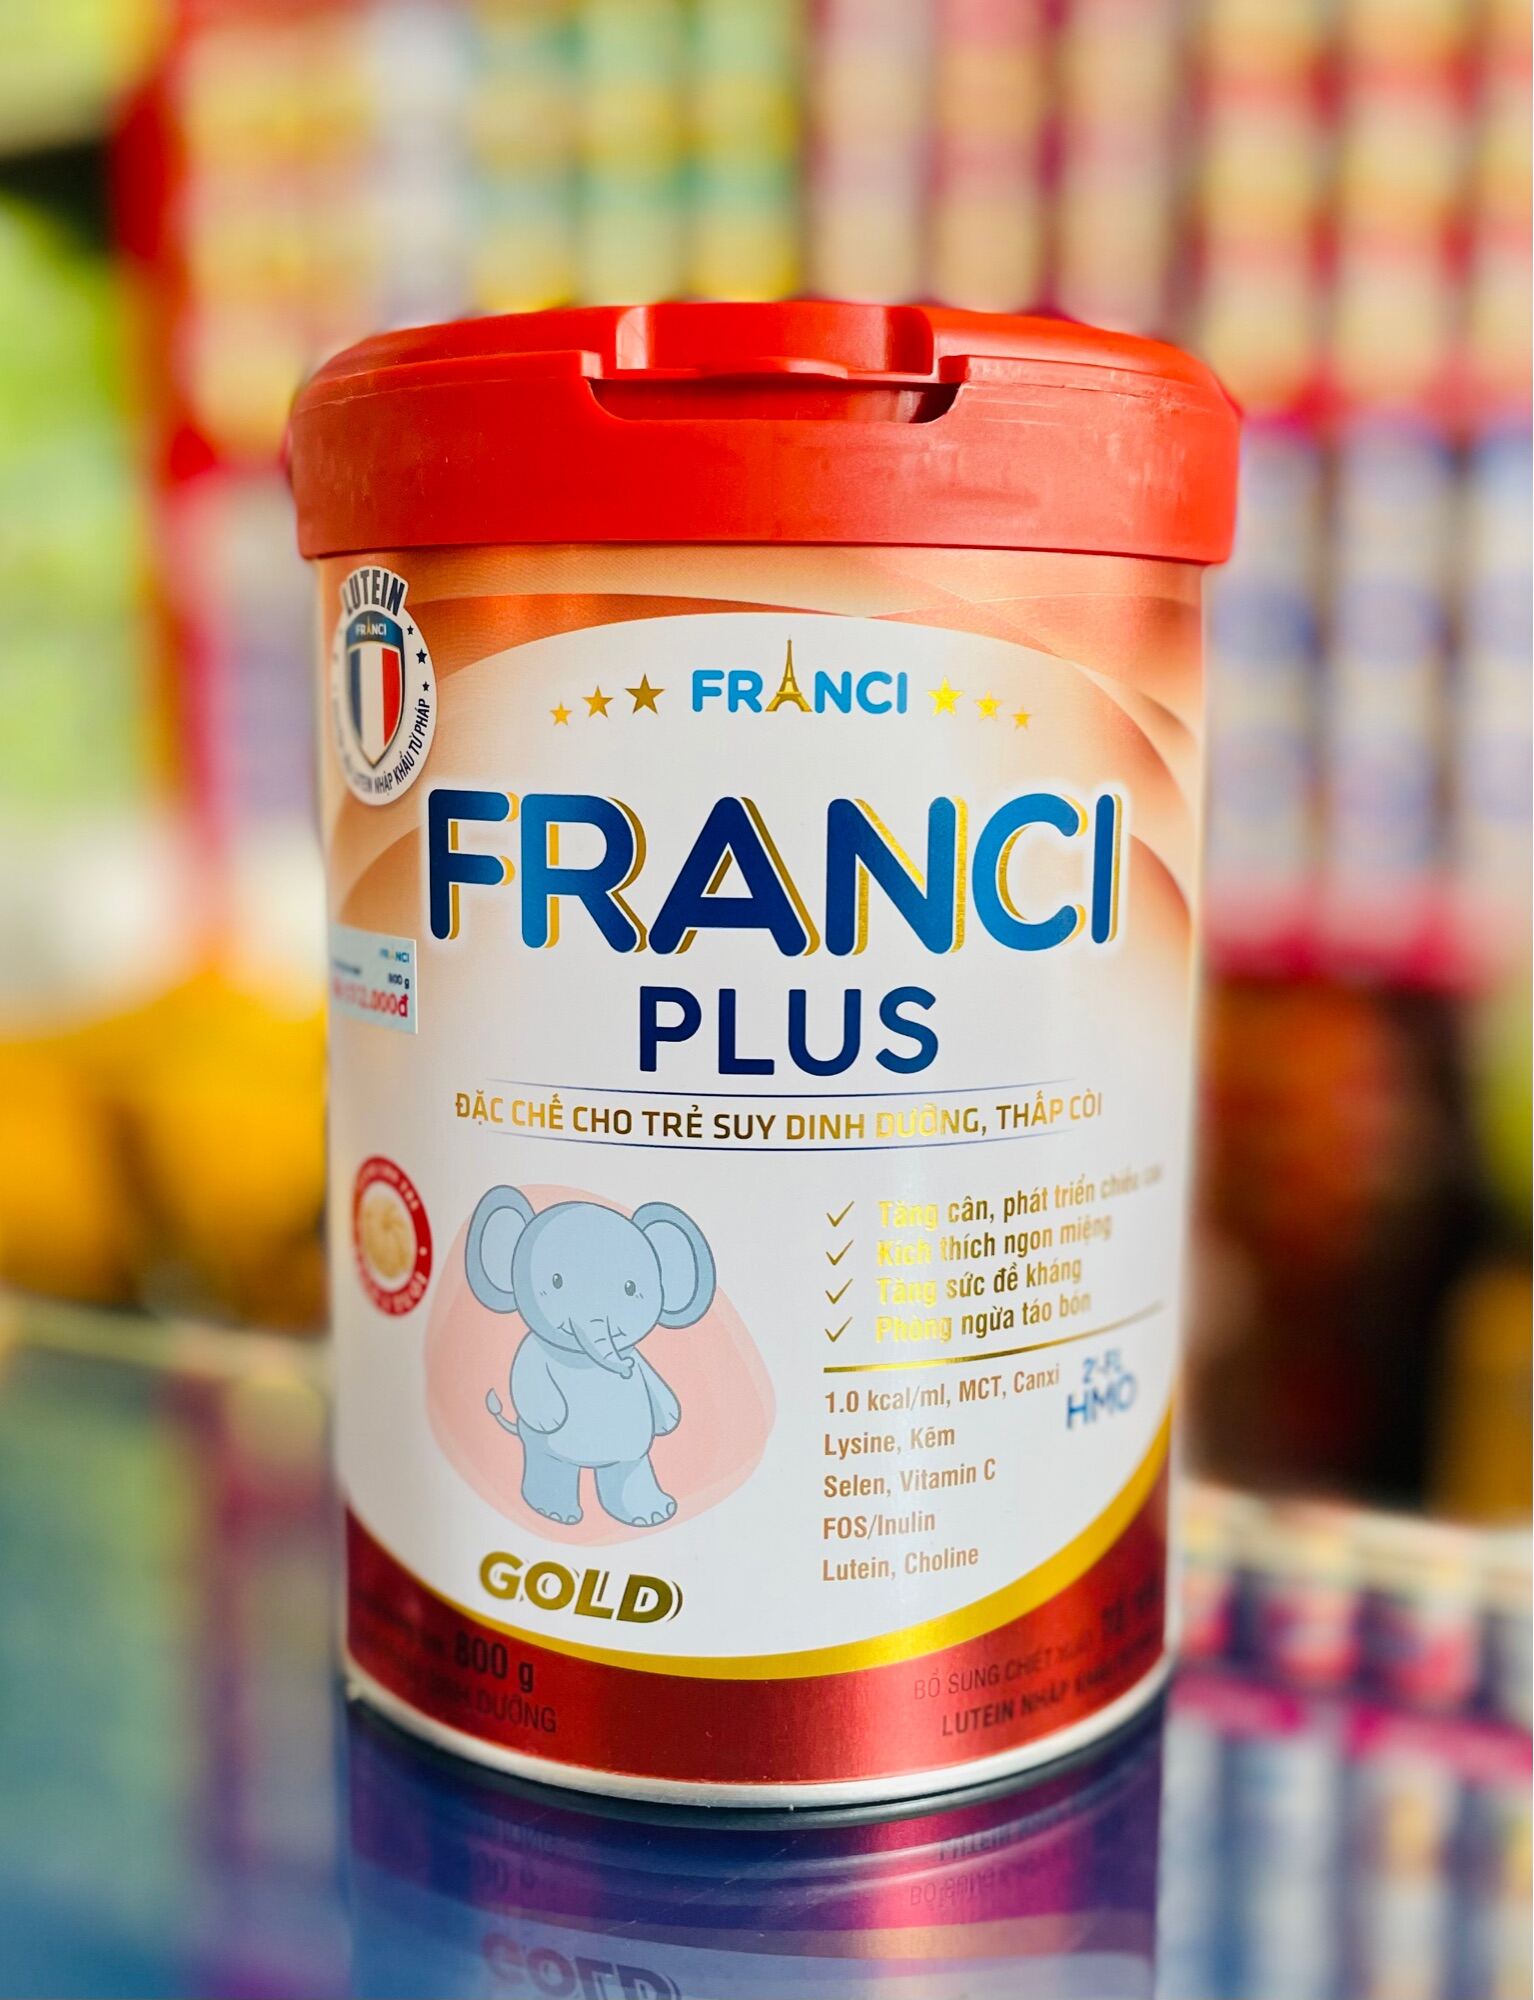 Sữa Bột Franci Plus cho trẻ nhẹ cân thấp còi 850g